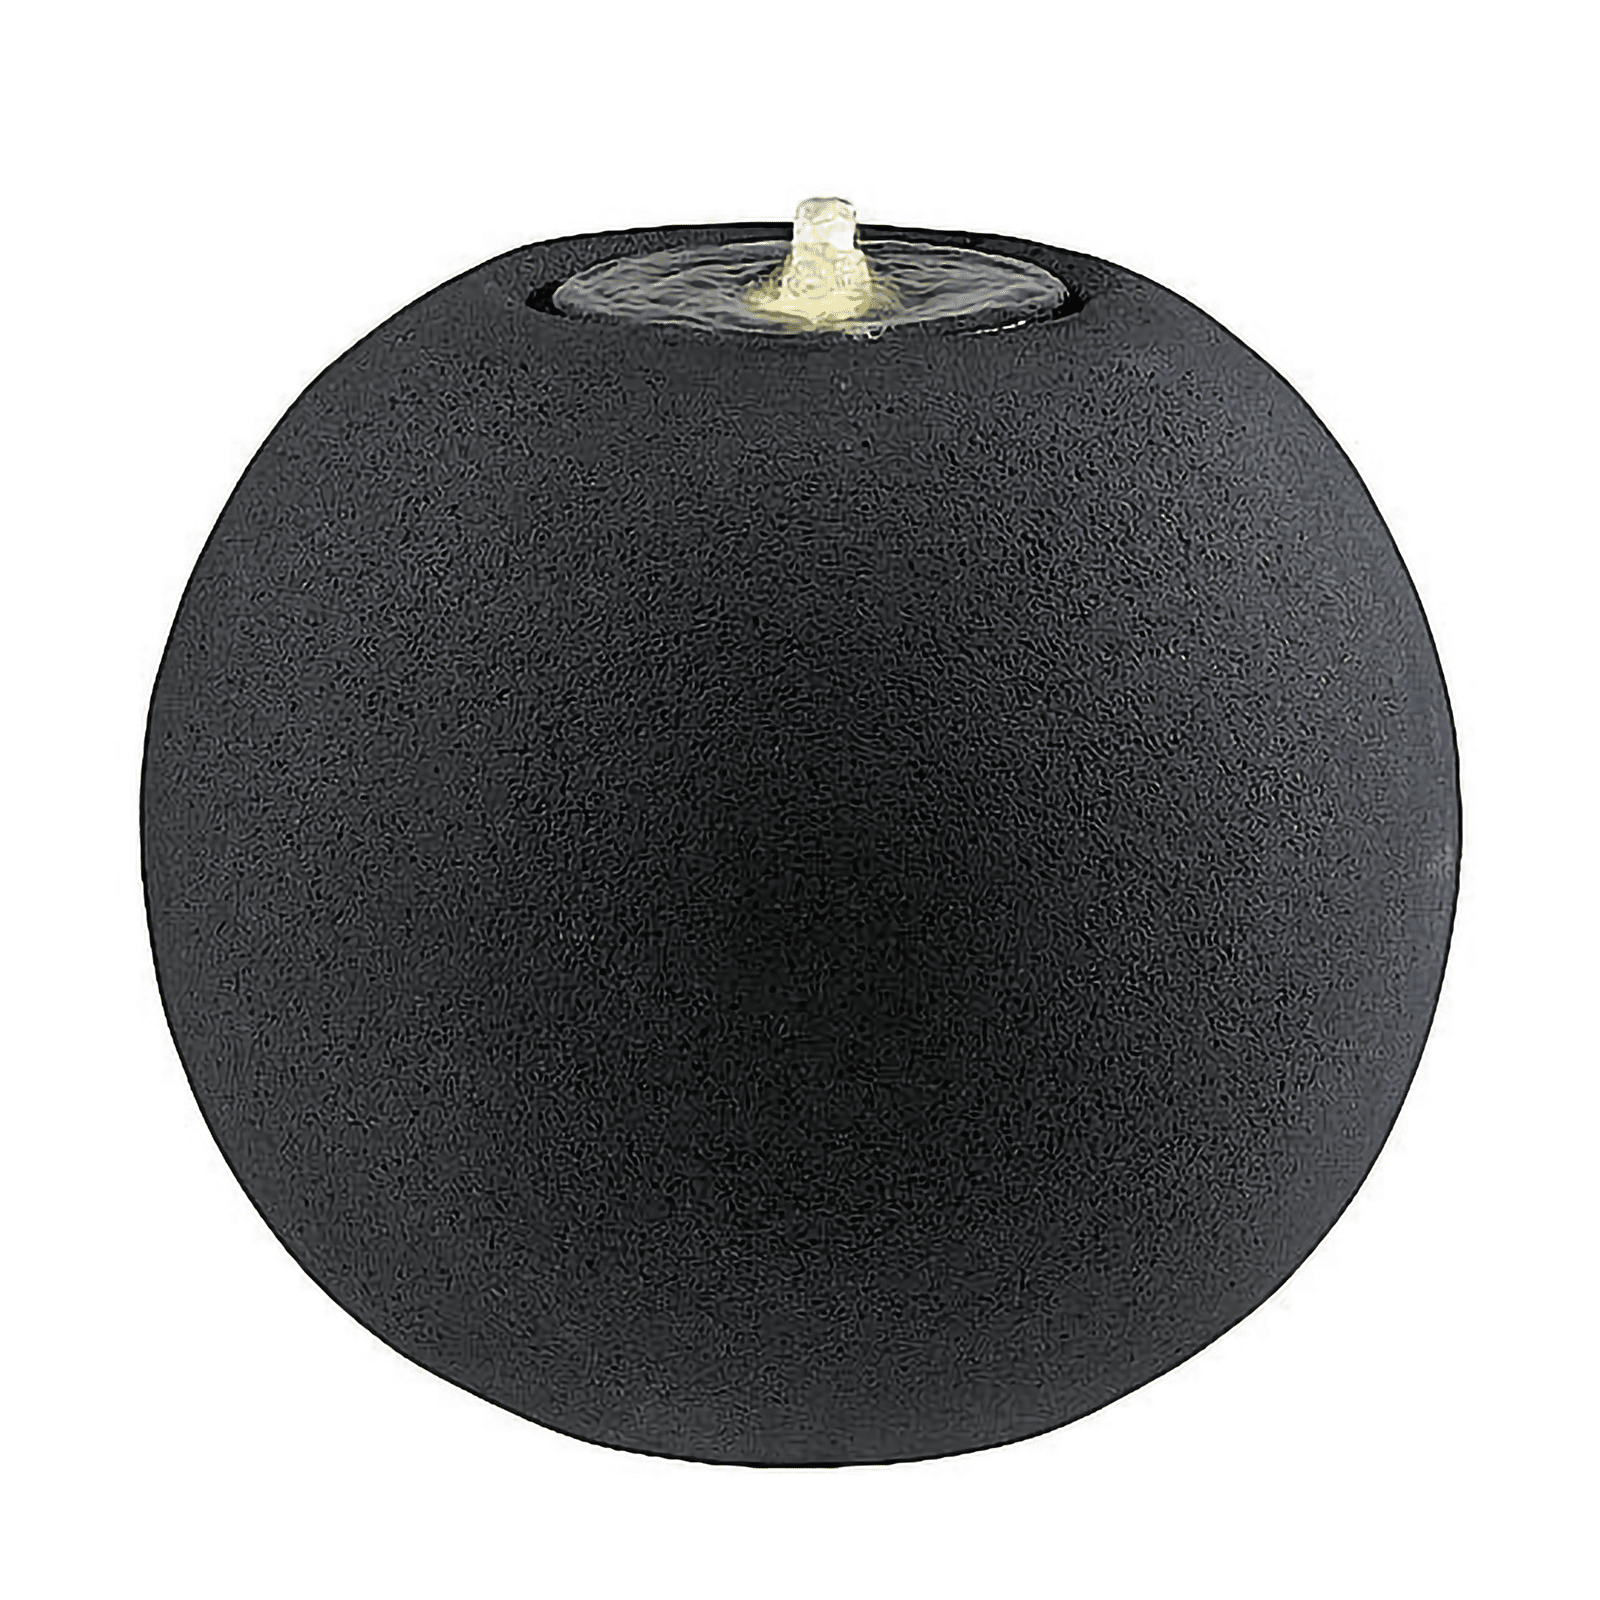 MAICAO-41—Black-Stone